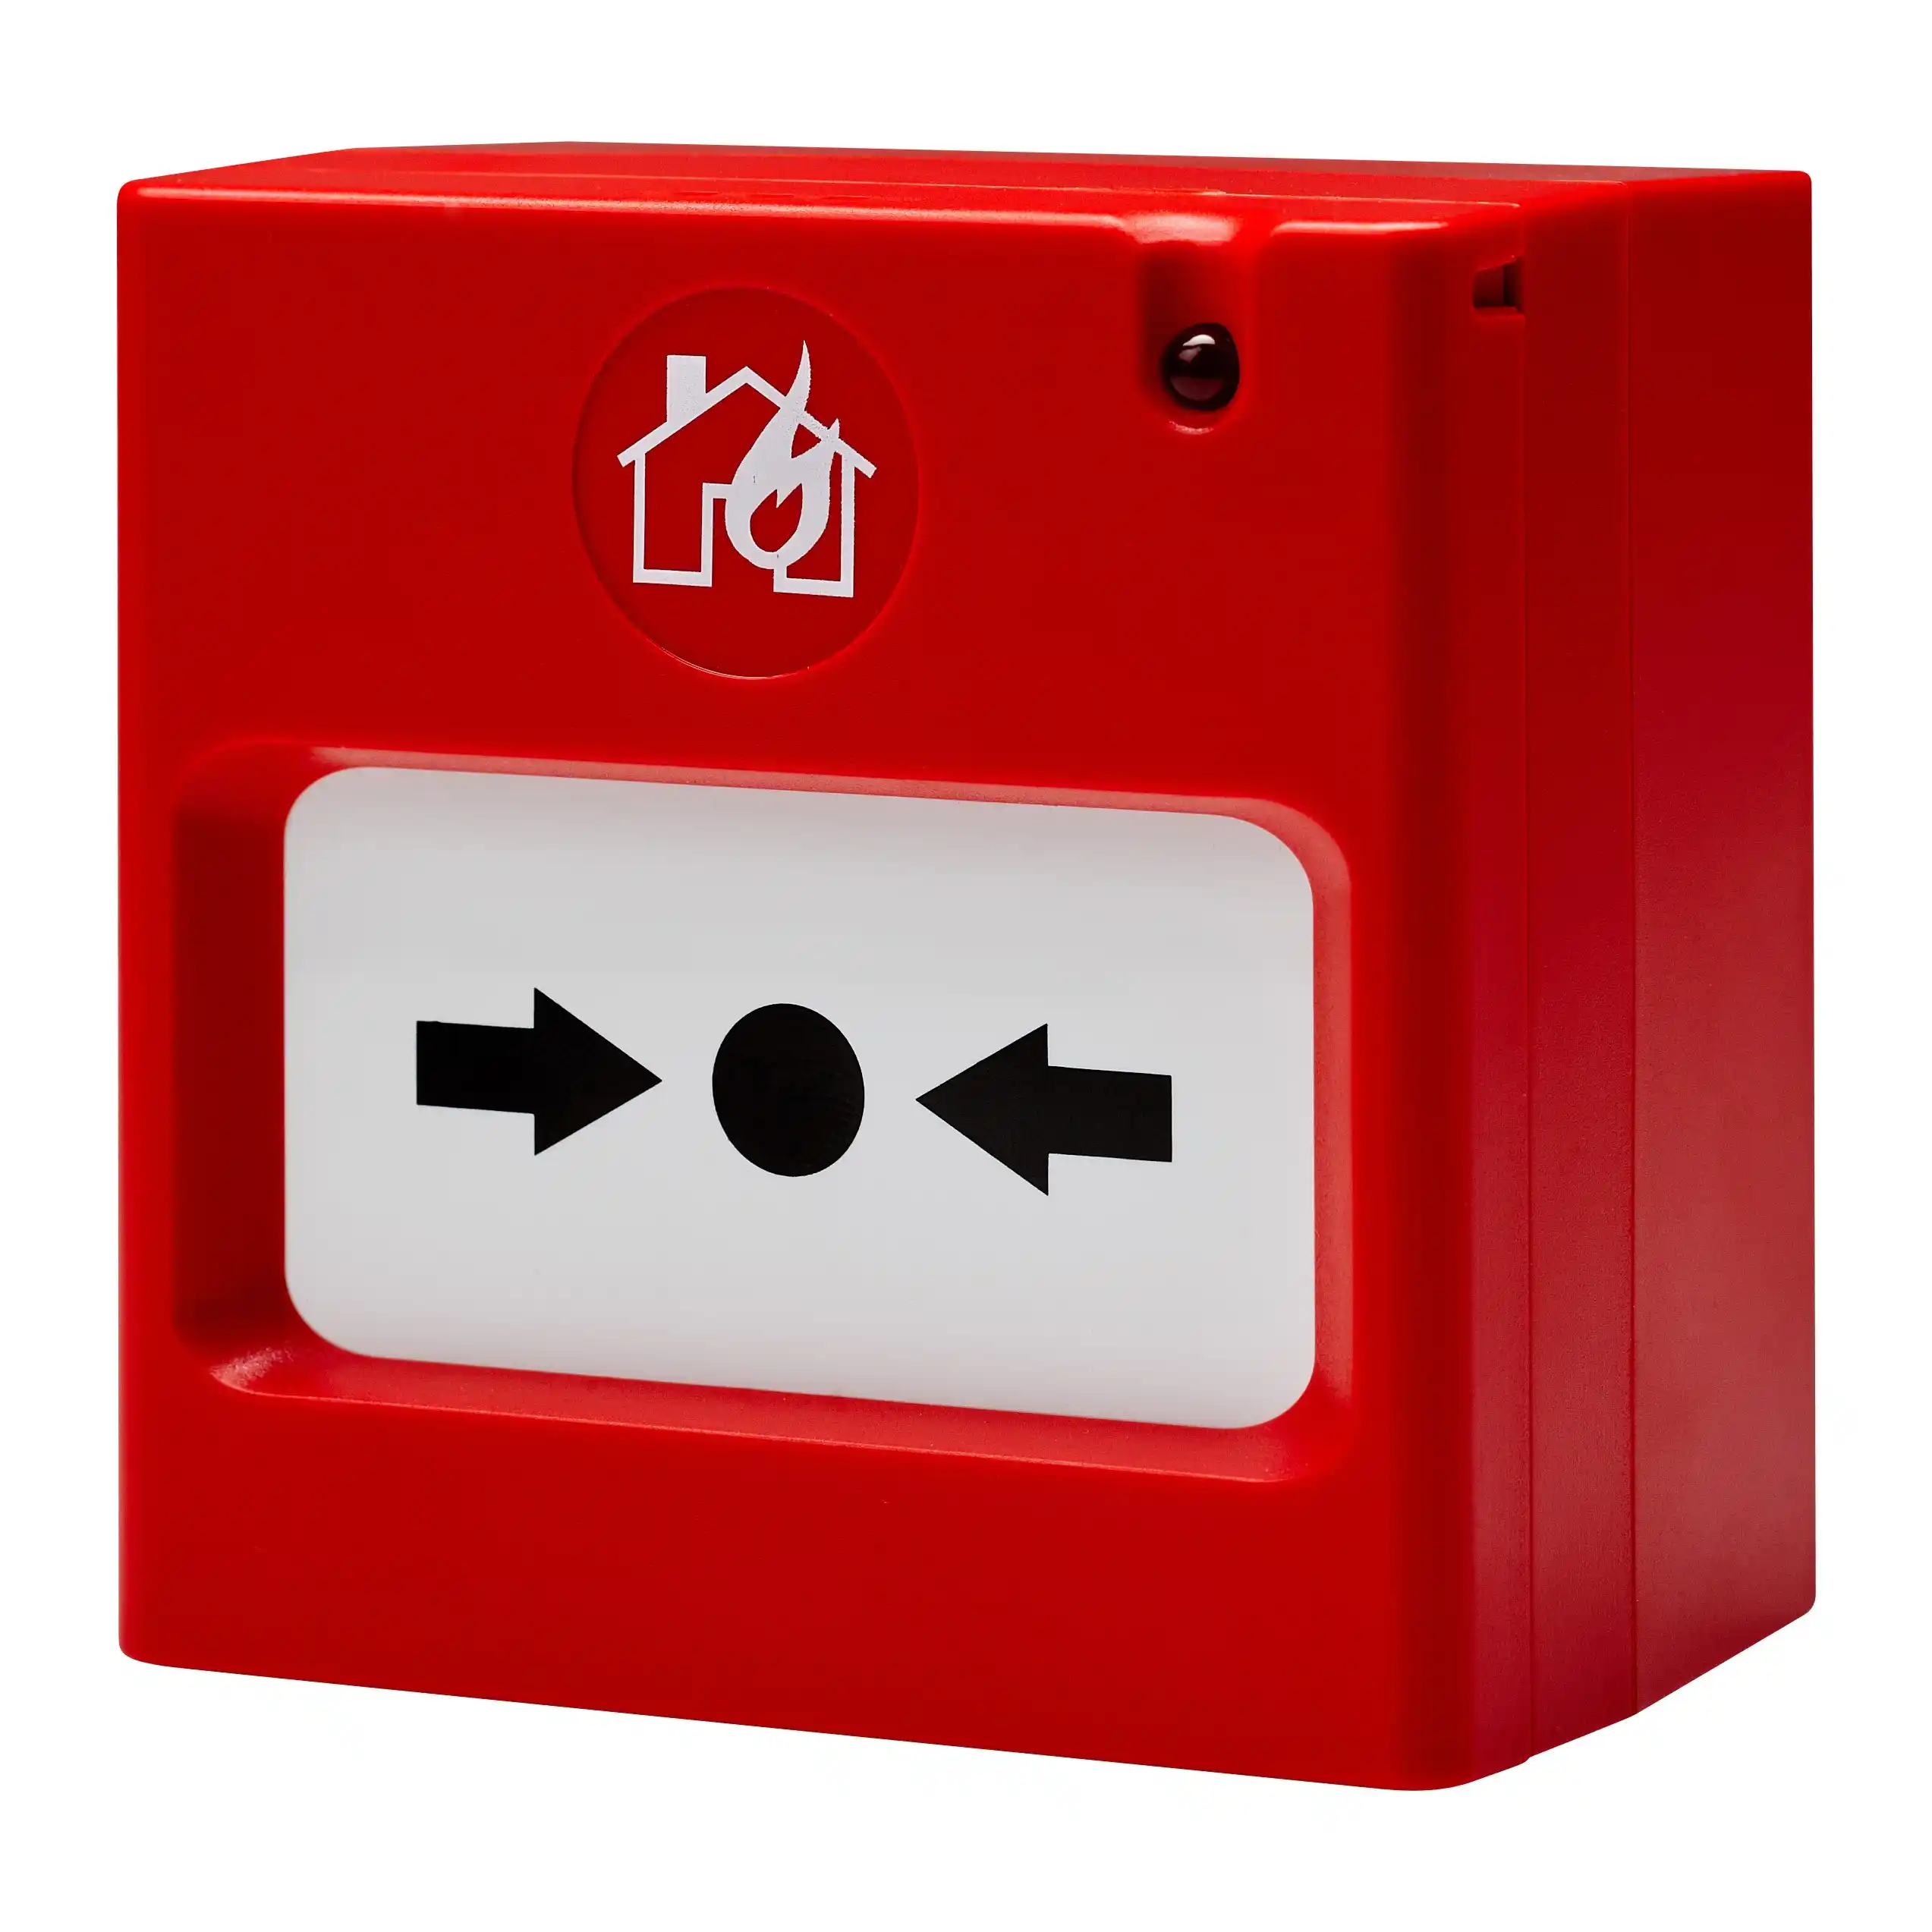 Красная кнопка сигнализации. Пожарная кнопка. Кнопка пожарной сигнализации. Выключатель пожарной сигнализации. Кнопка ручного пожарного извещателя.